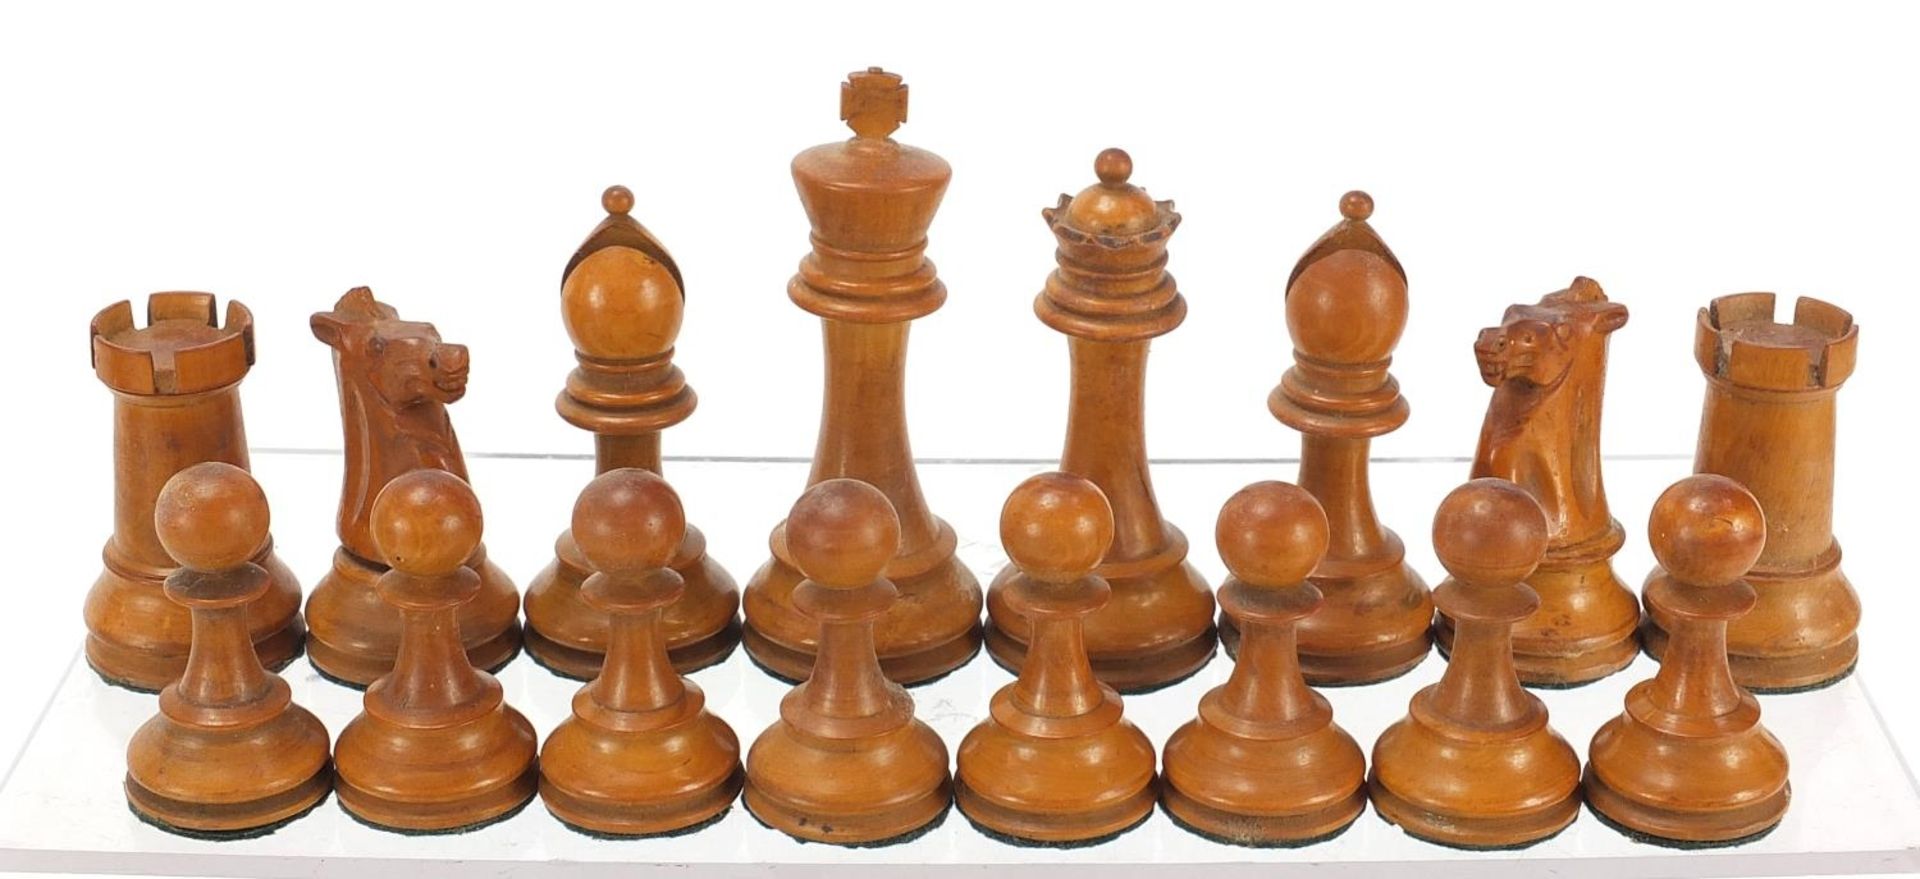 19th century boxwood and ebonised Staunton chess set, 10.5cm high - Image 2 of 9